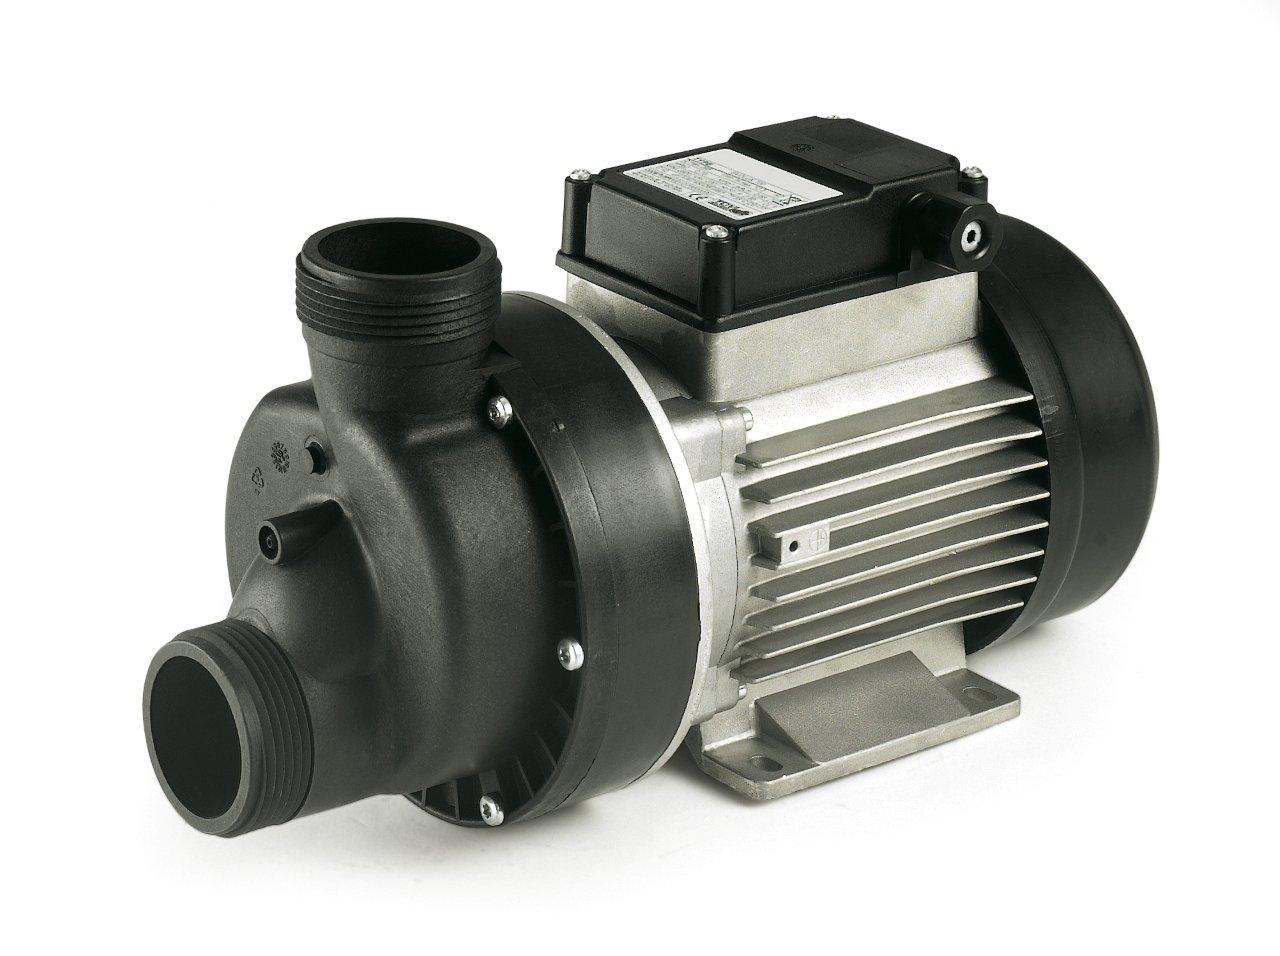 Odstředivá pumpa EVOLUX - 1000, 22,6 m3/h, 230 V, 0,75 kW